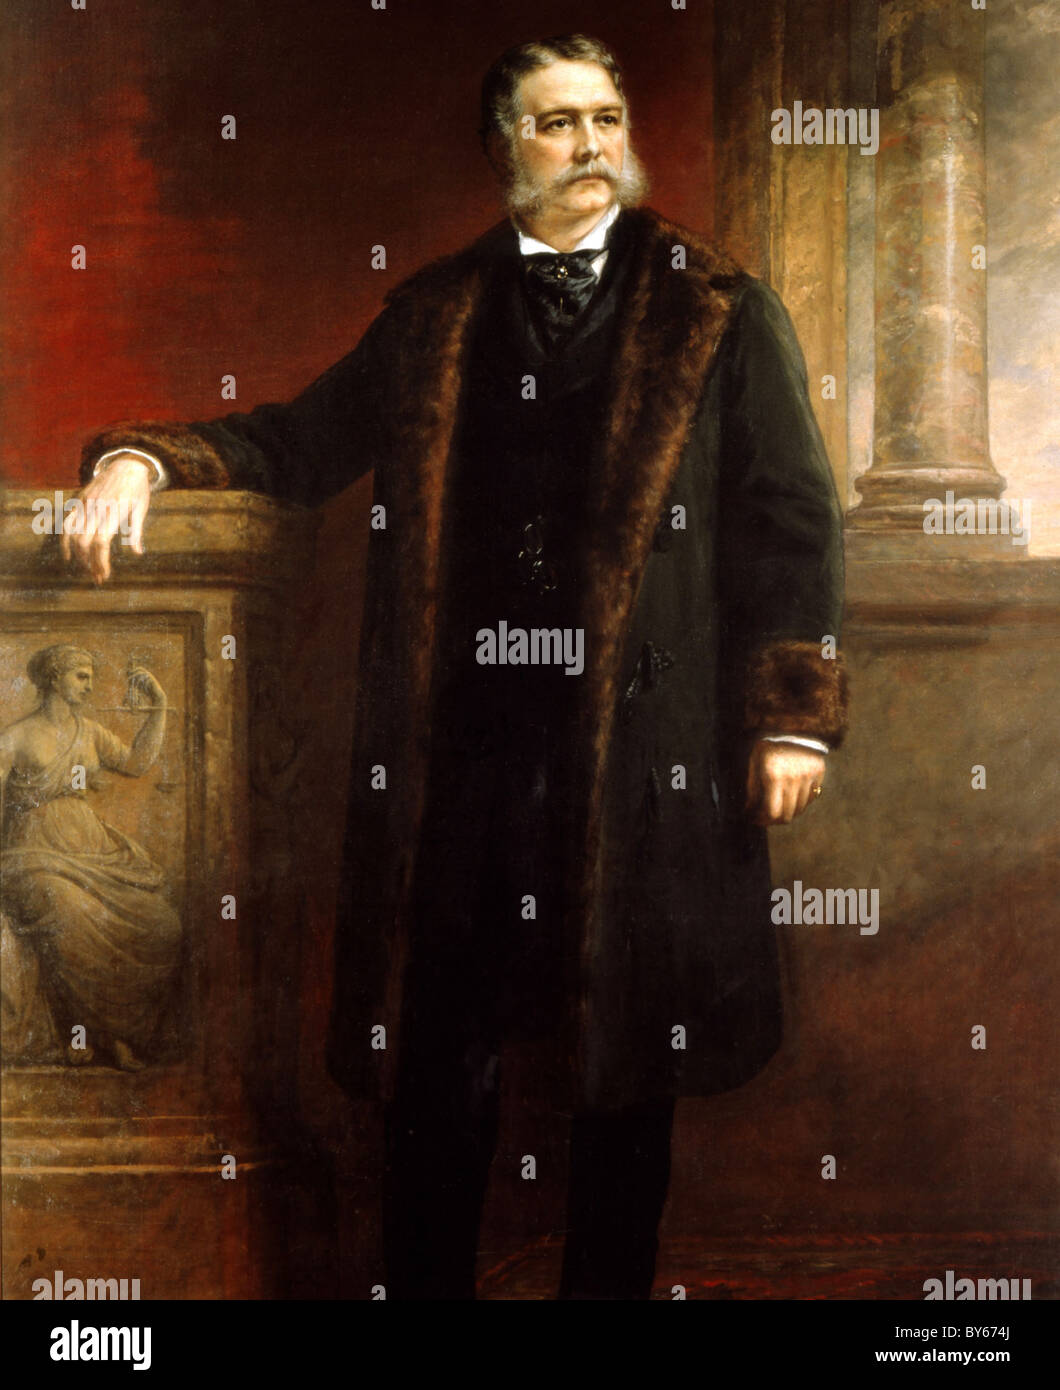 Chester Alan Arthur war der 21. Präsident der Vereinigten Staaten. Stockfoto